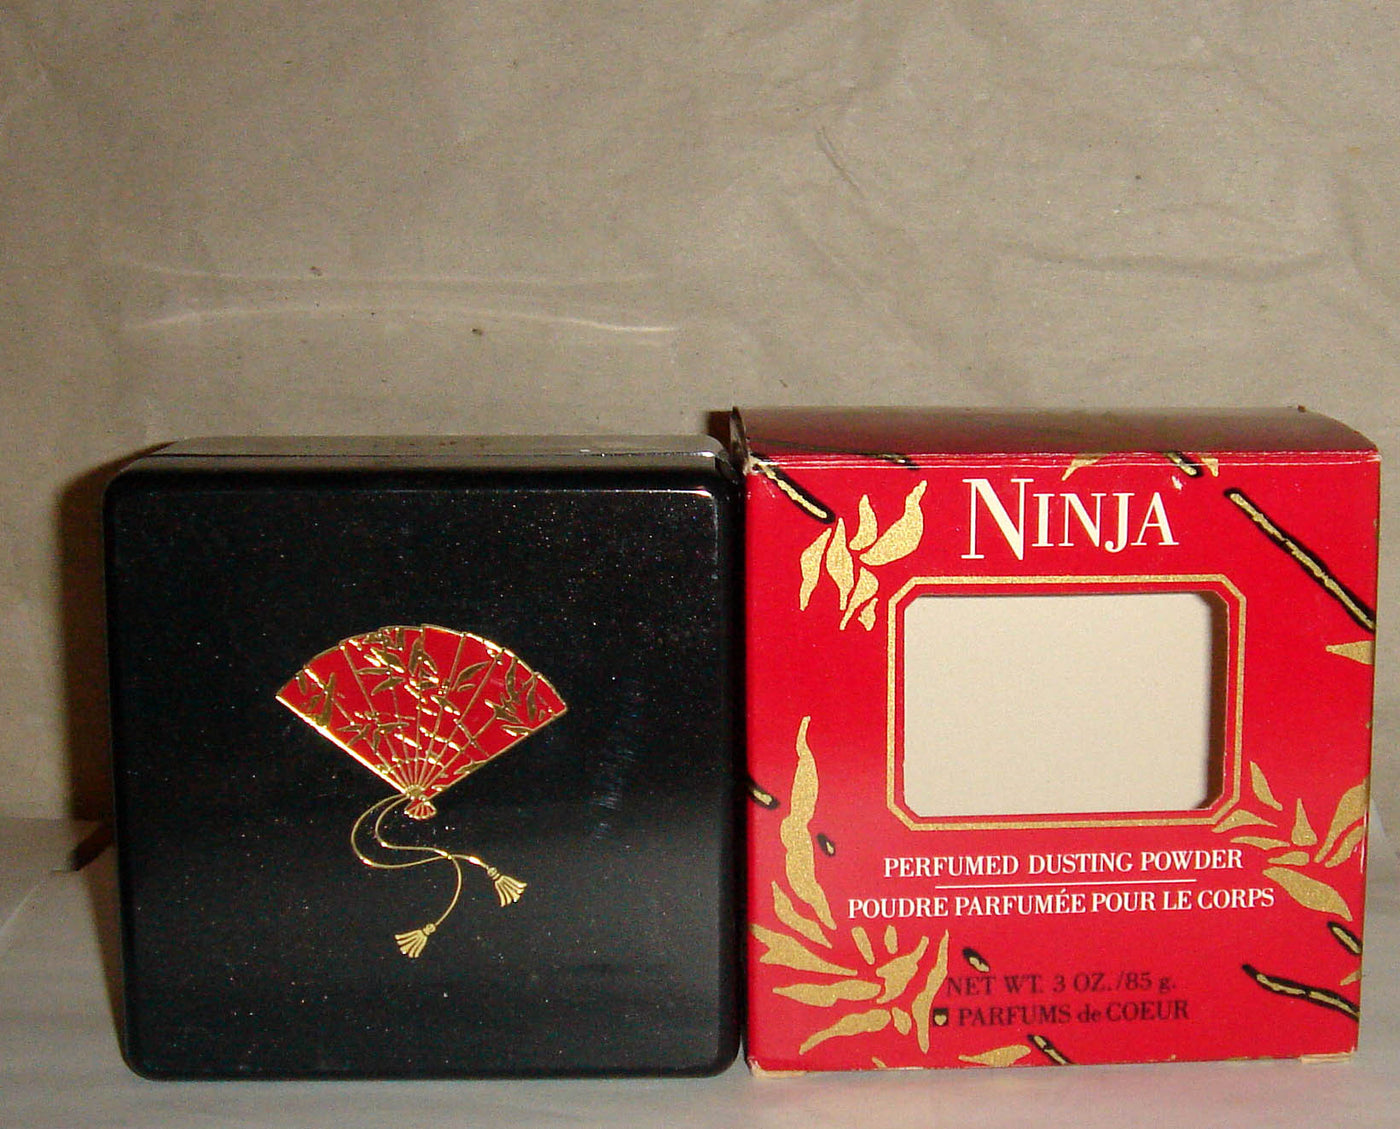 Parfums de Coeur Ninja Perfumed Dusting Powder